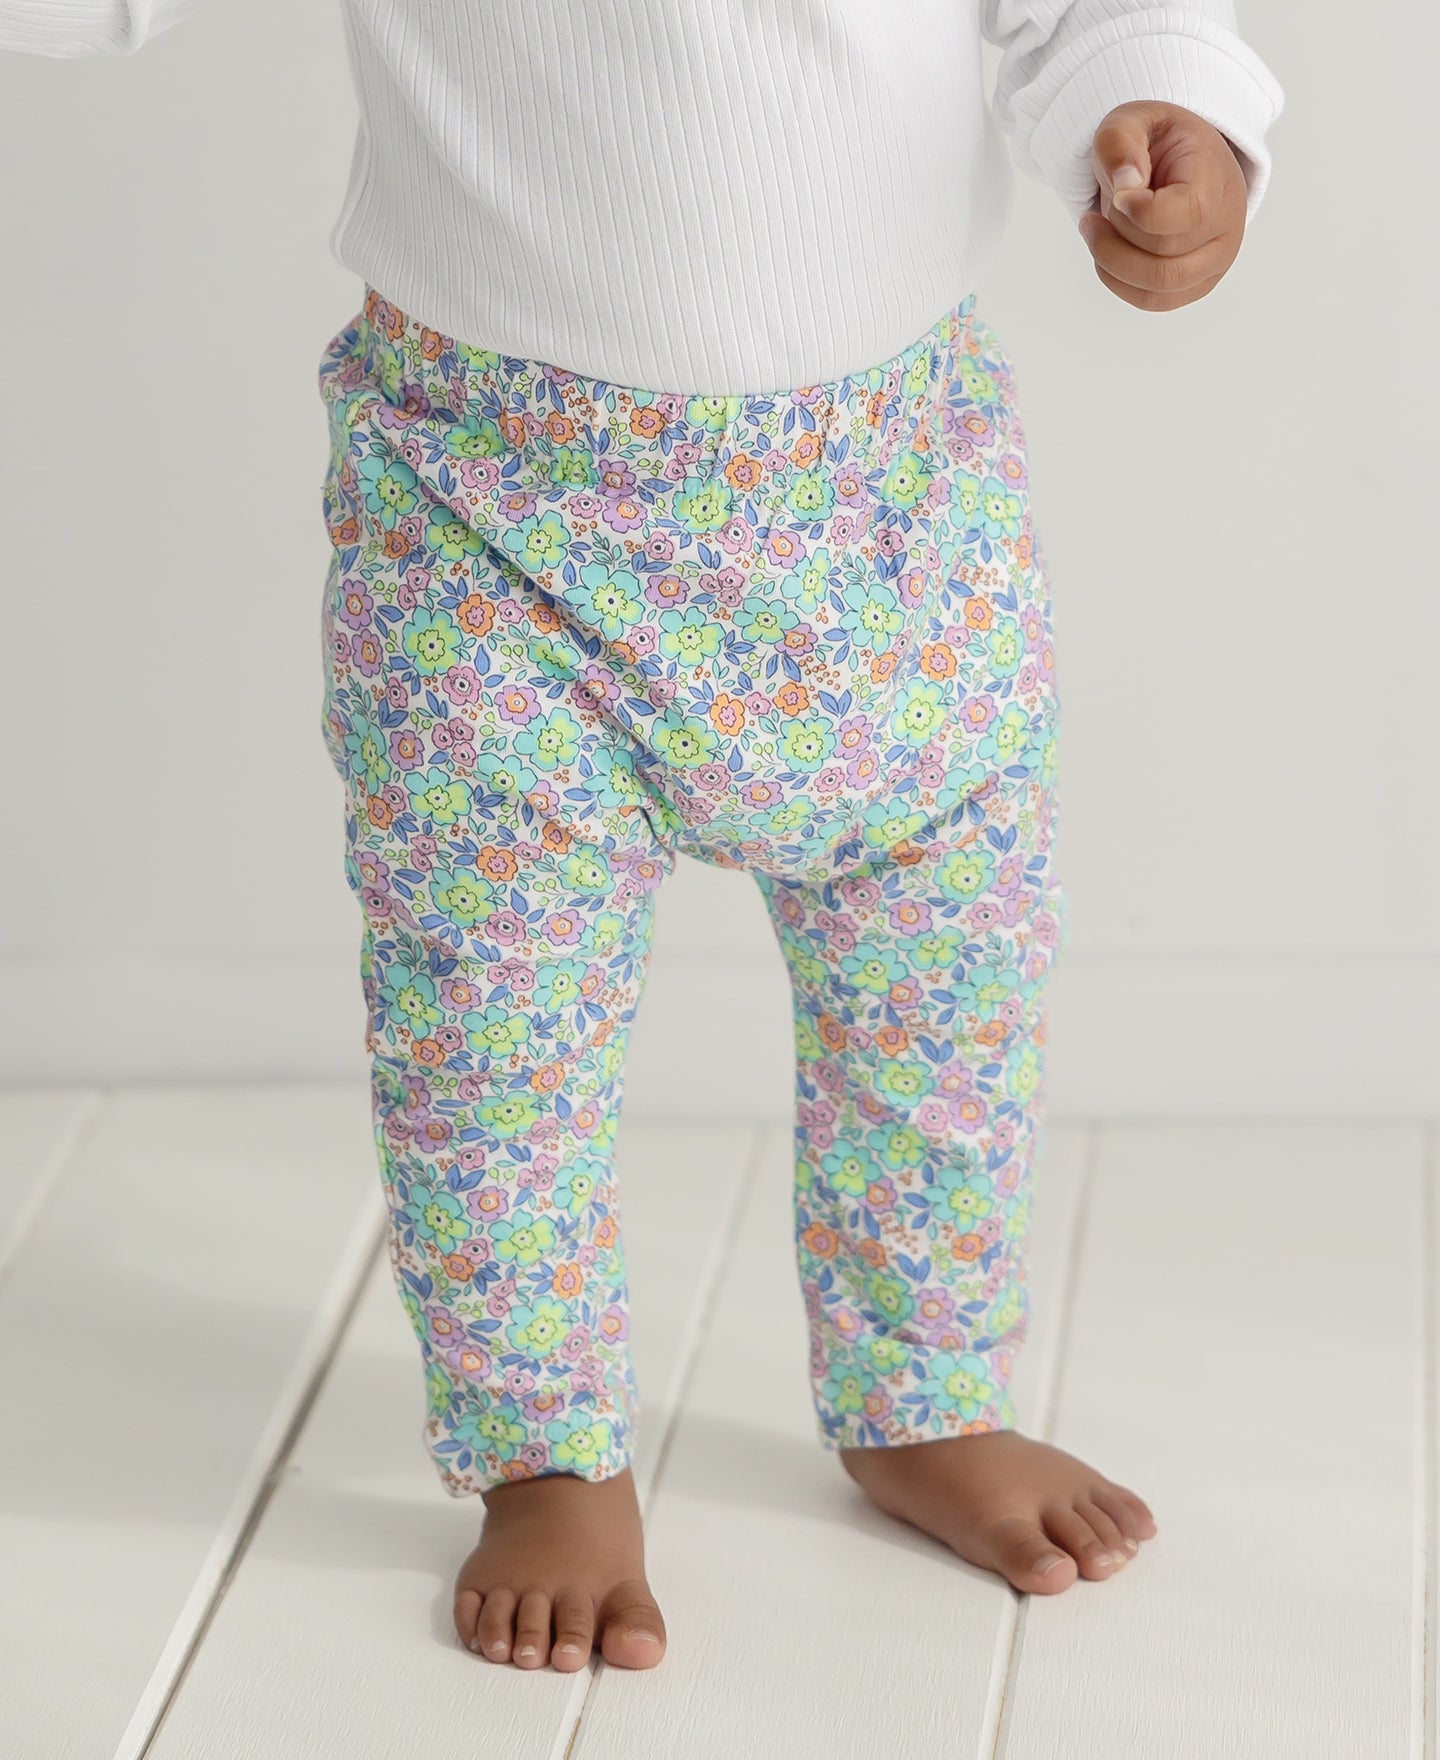 Super easy baby Set - Crochet leggings or pants - boy/girl 0-12M -  beginners -Crochet for Baby #190 - YouTube